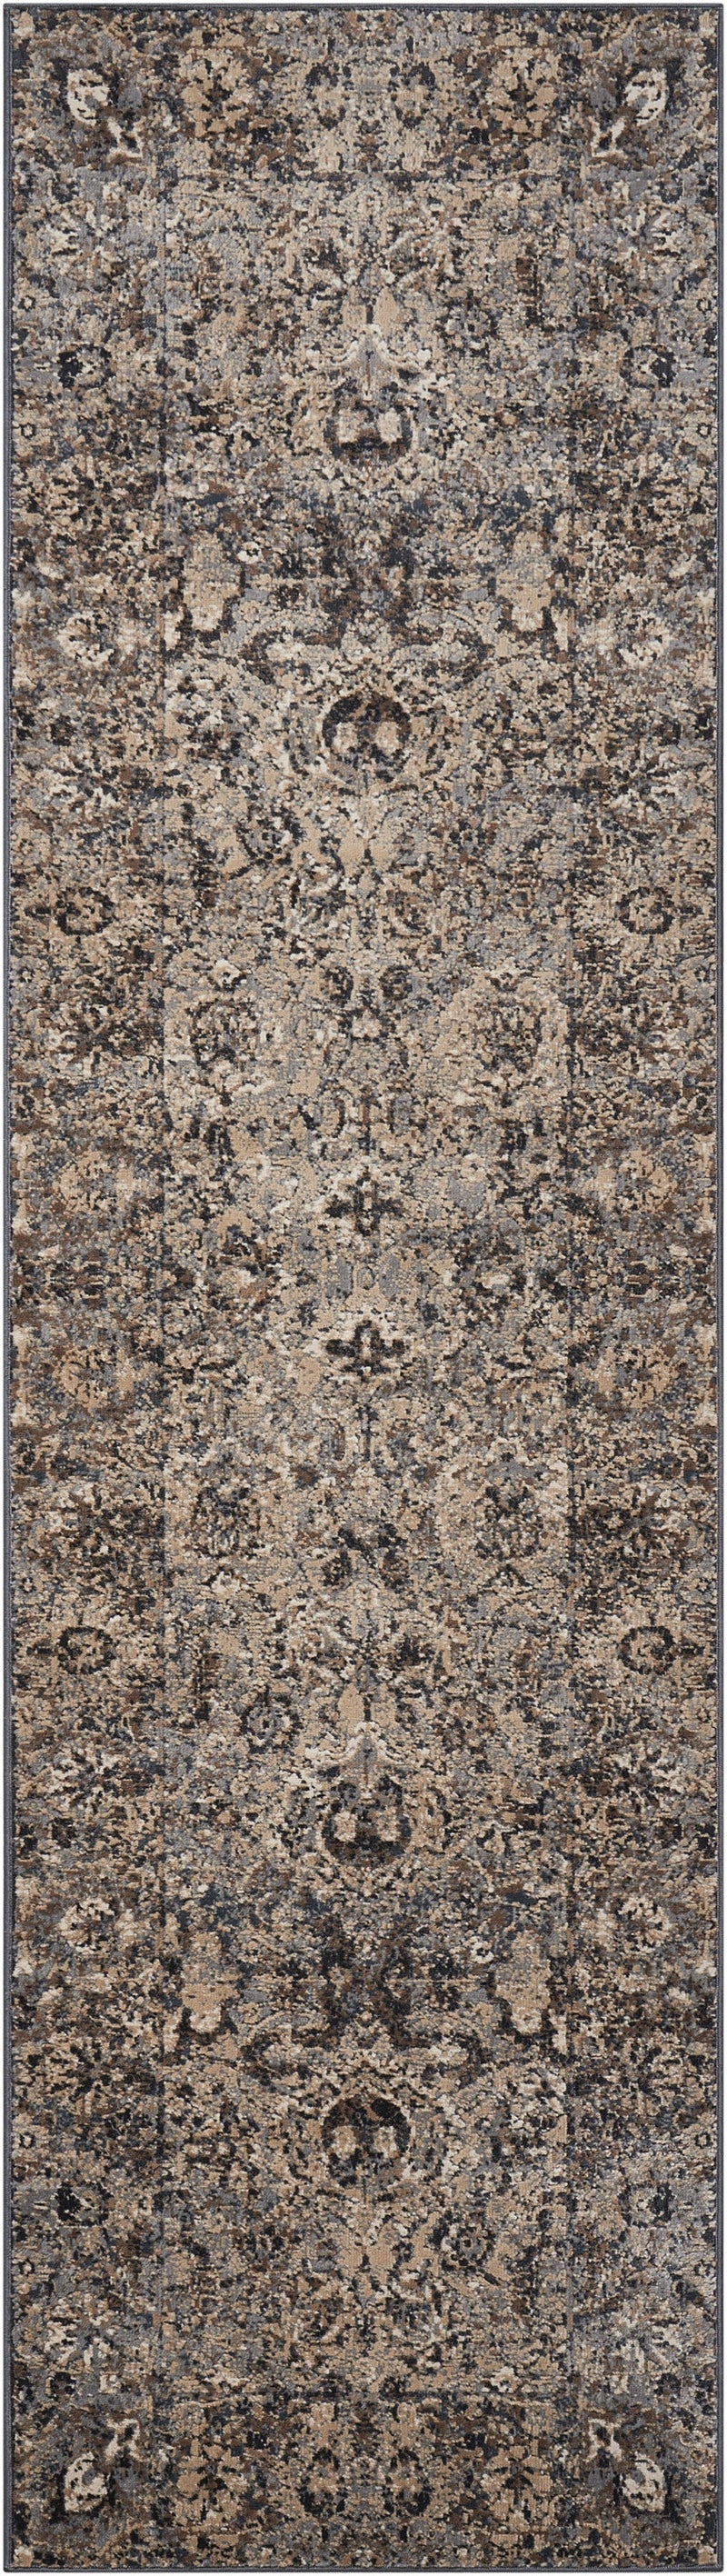 media image for malta slate rug by nourison 99446361141 redo 2 259